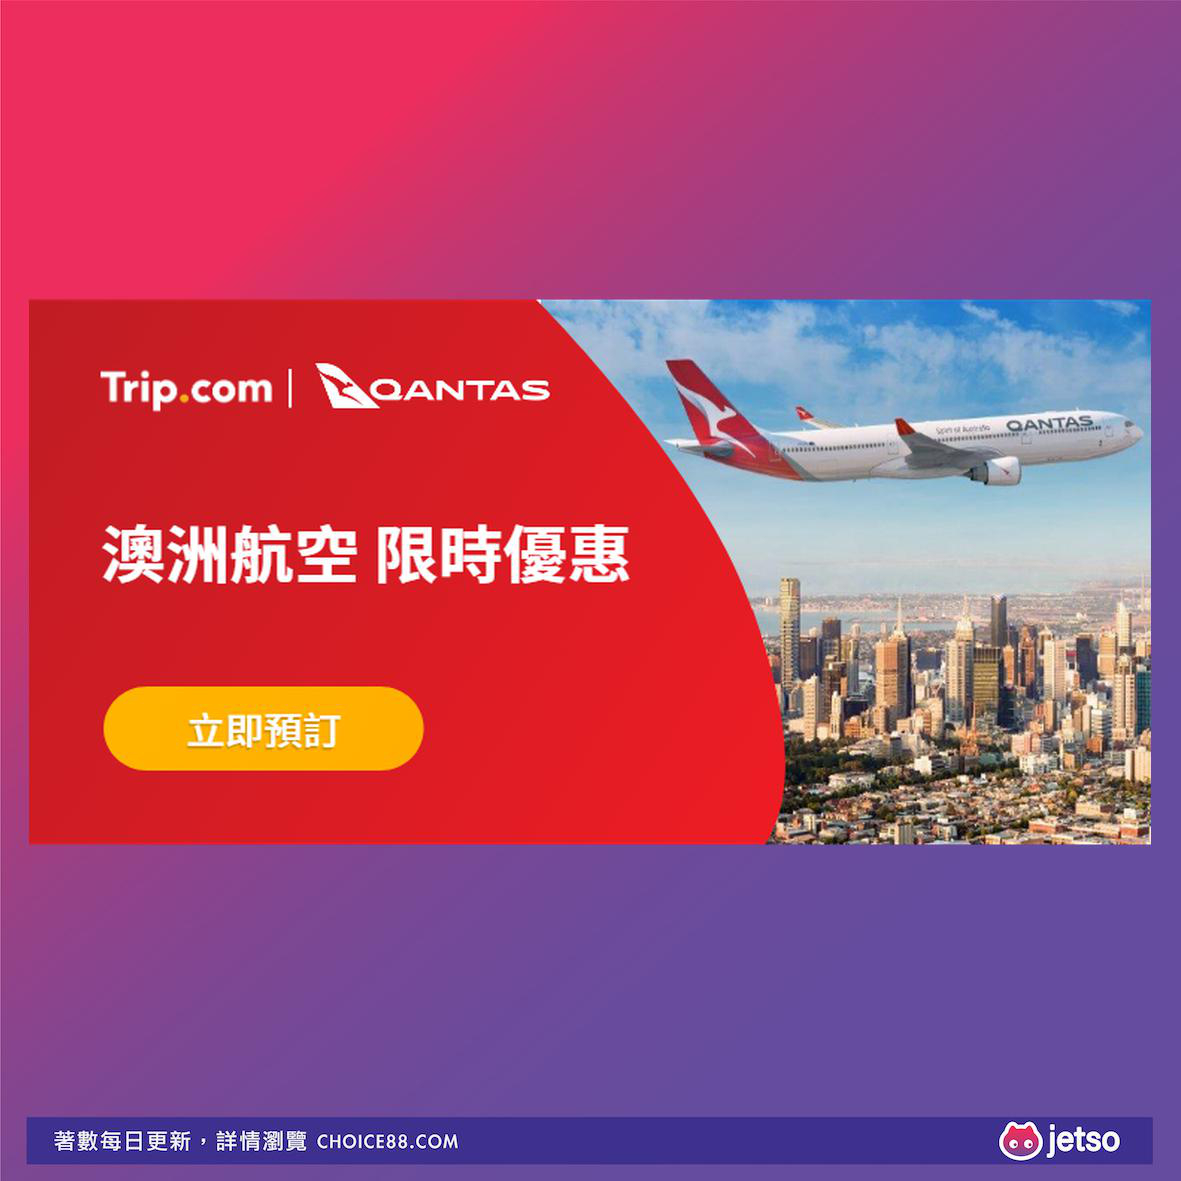 Trip.com : 澳洲航空限时优惠